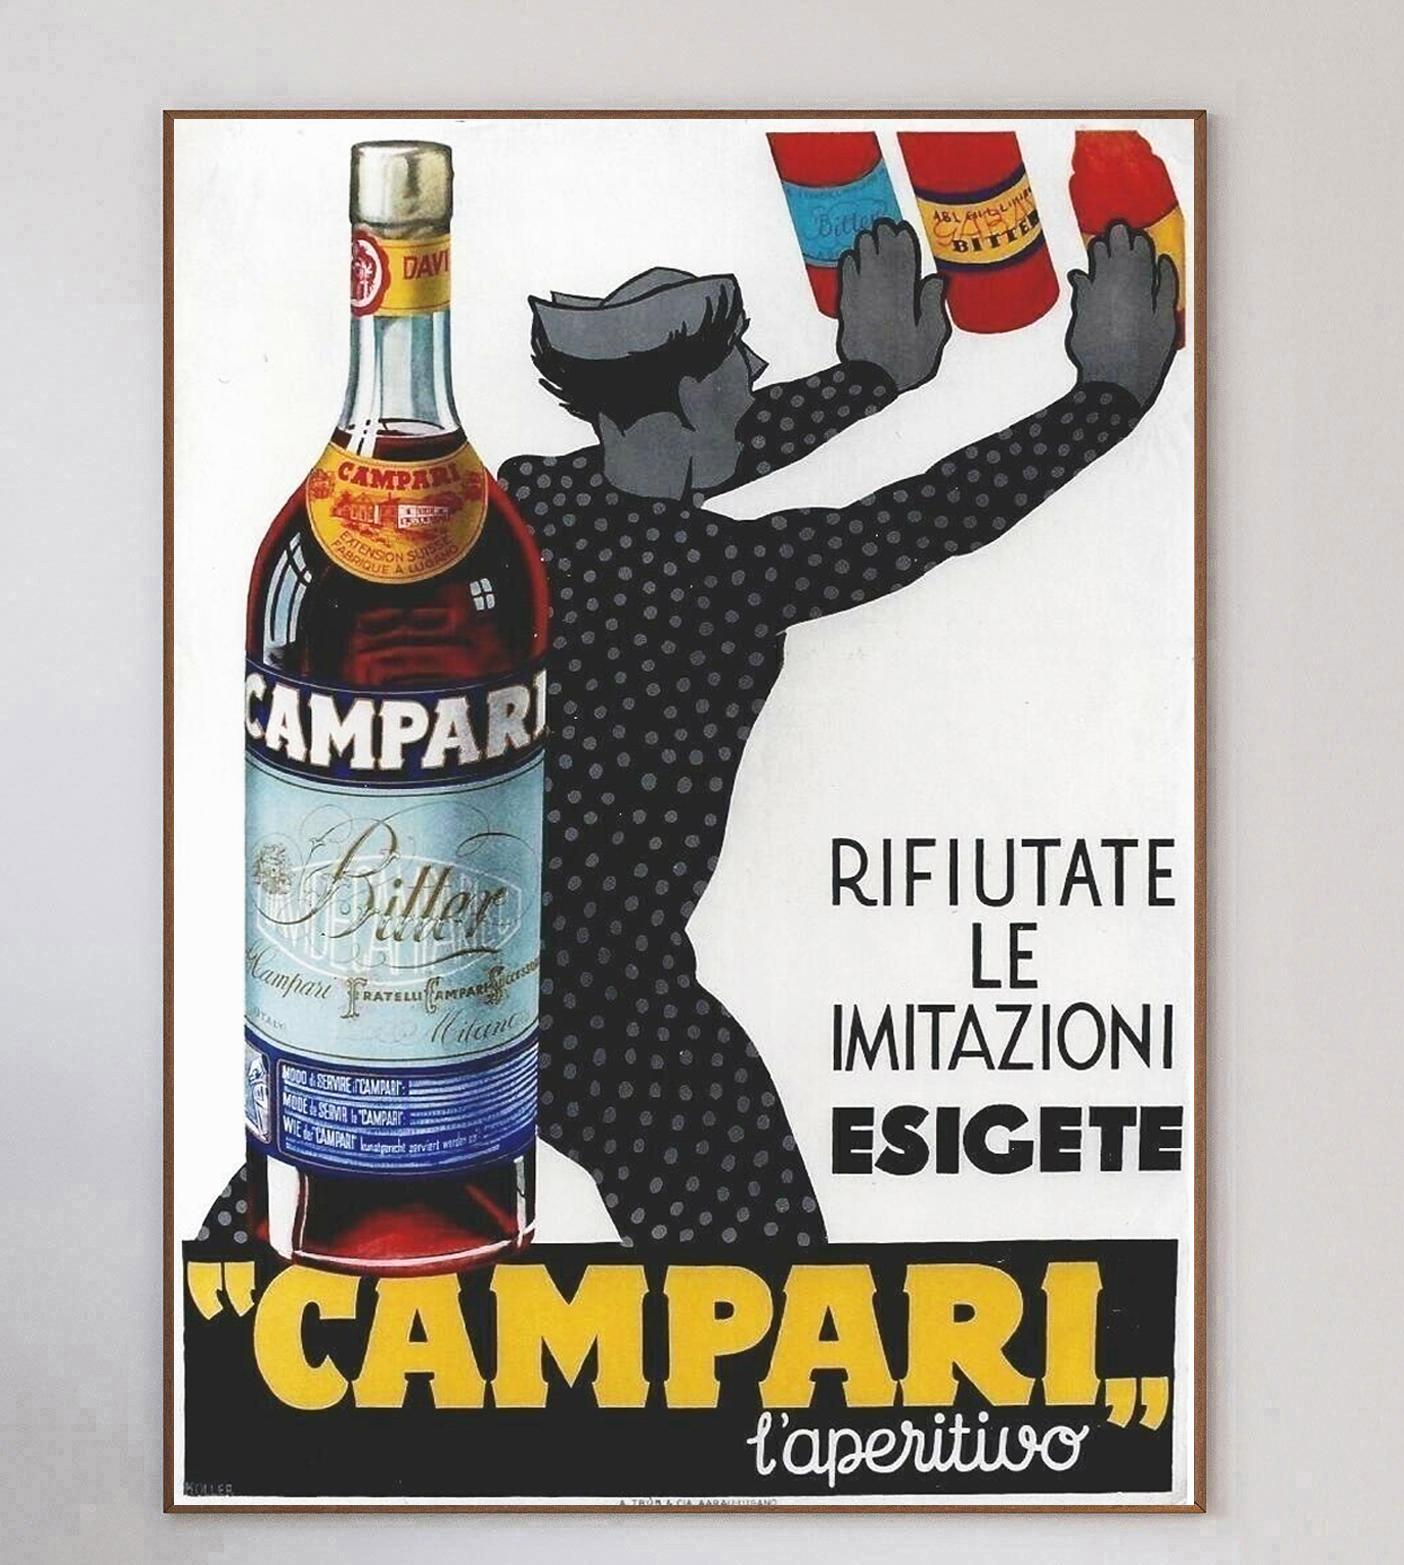 L'emblématique marque de liqueur italienne Campari a collaboré avec de nombreux artistes tout au long du XXe siècle, créant des œuvres d'art merveilleuses et intemporelles. Campari a été formé en 1860 par Gaspare Campari et l'apéritif est toujours